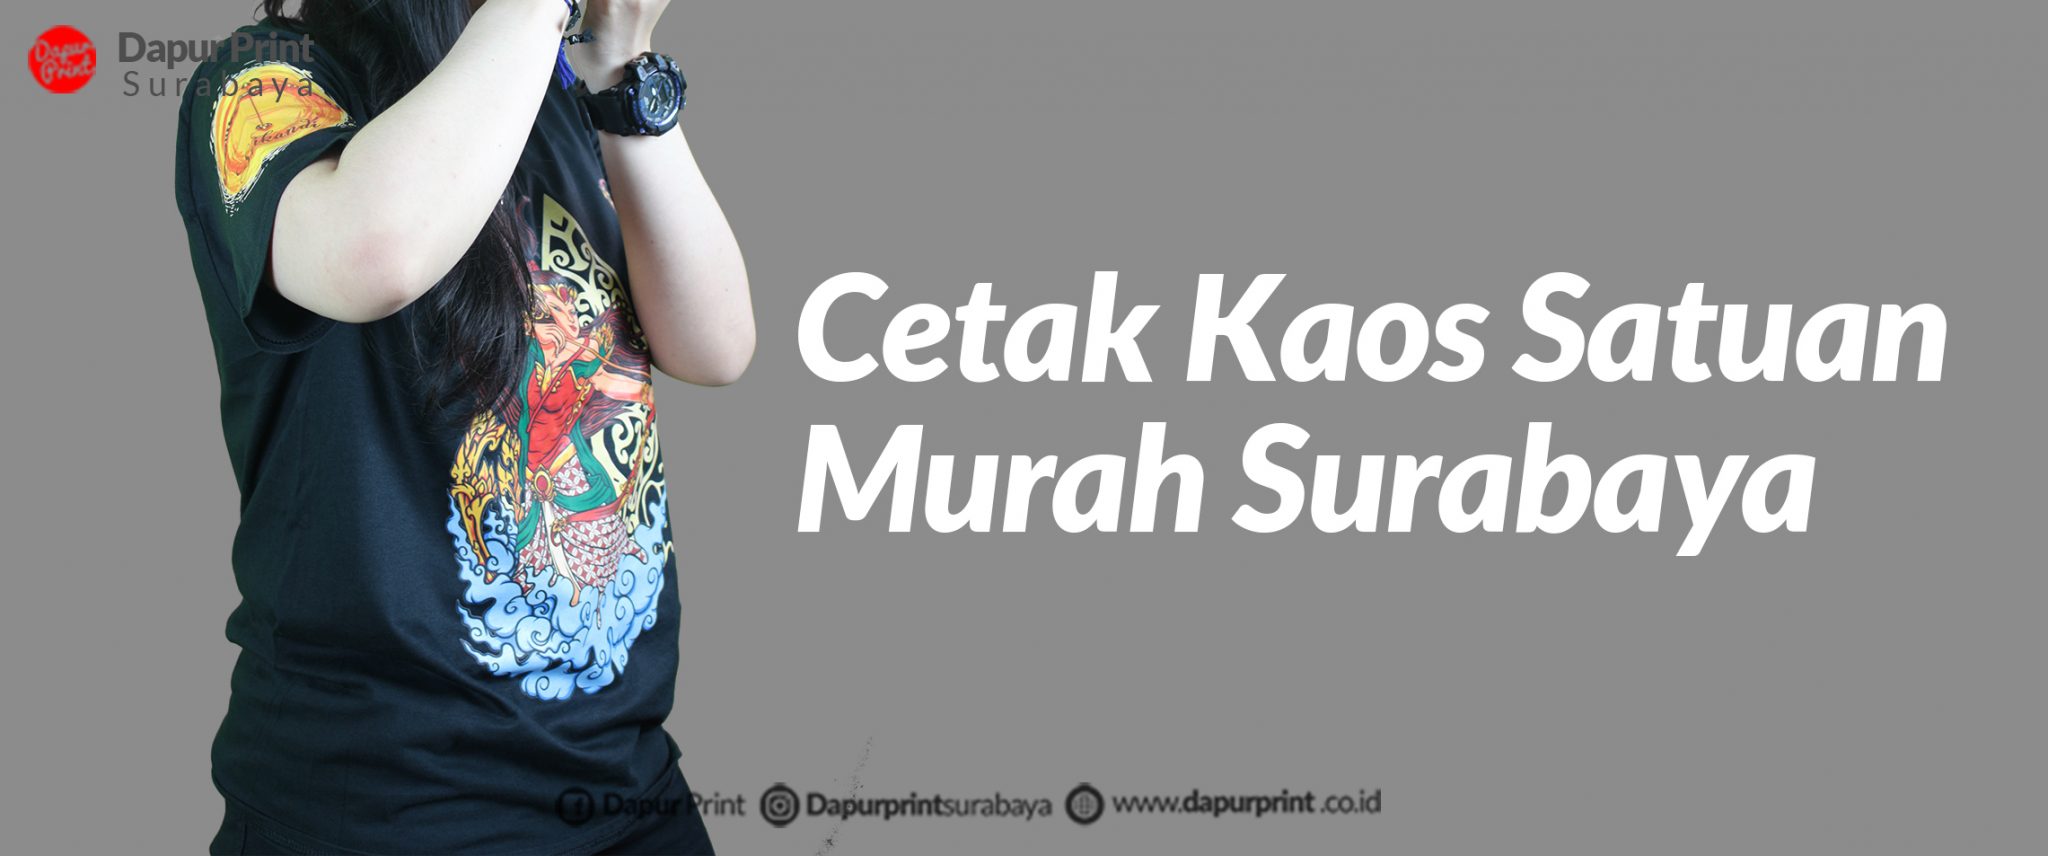 Buat Website Murah Surabaya